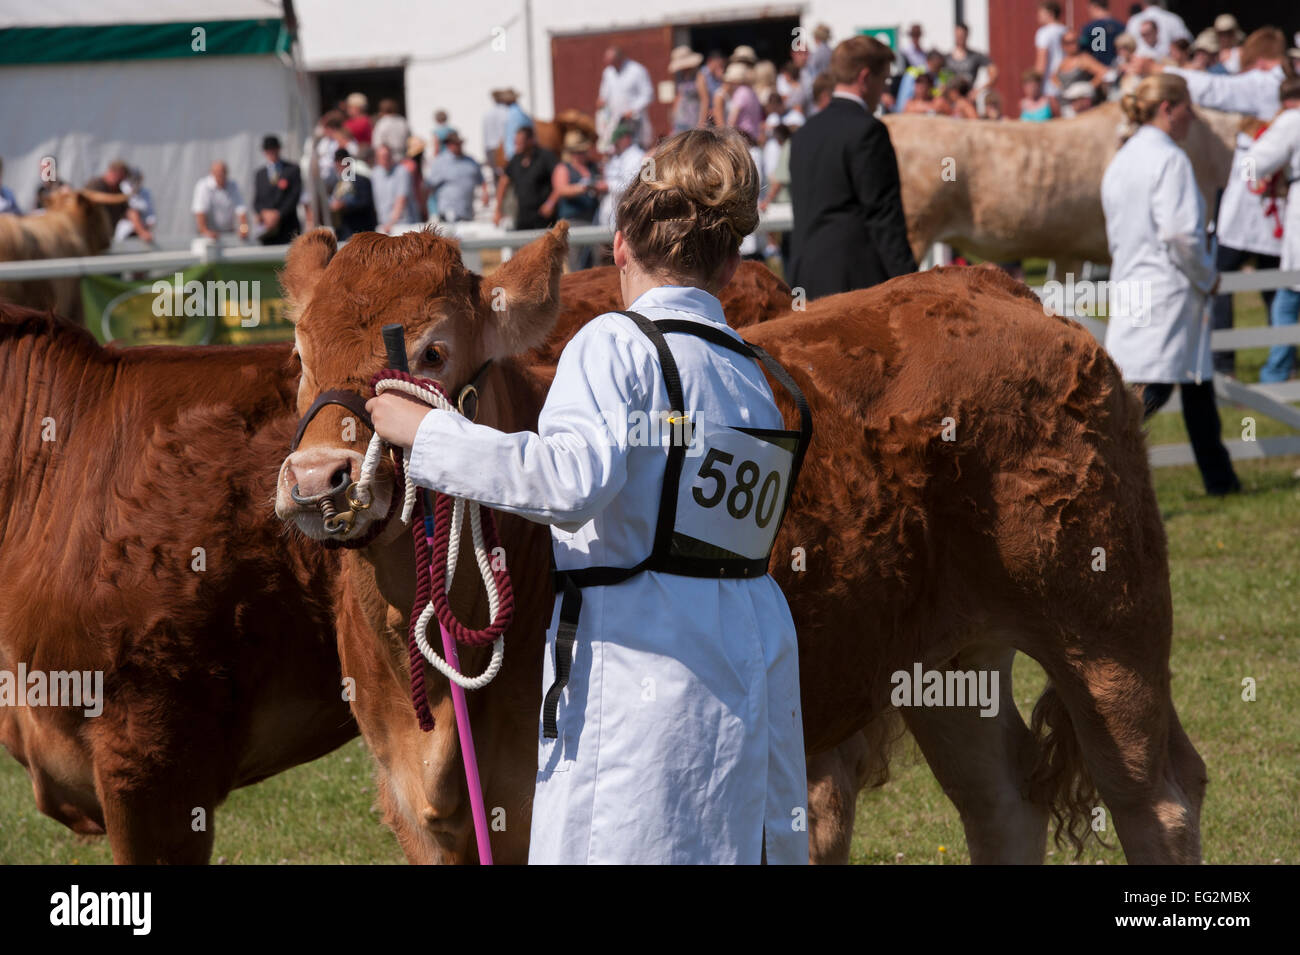 Rinder in einem Wettbewerb stehen mit weiblichen Handler (der Konkurrent Nummer auf weißen Mantel) im show Ring - Die große Yorkshire, England, UK. Stockfoto